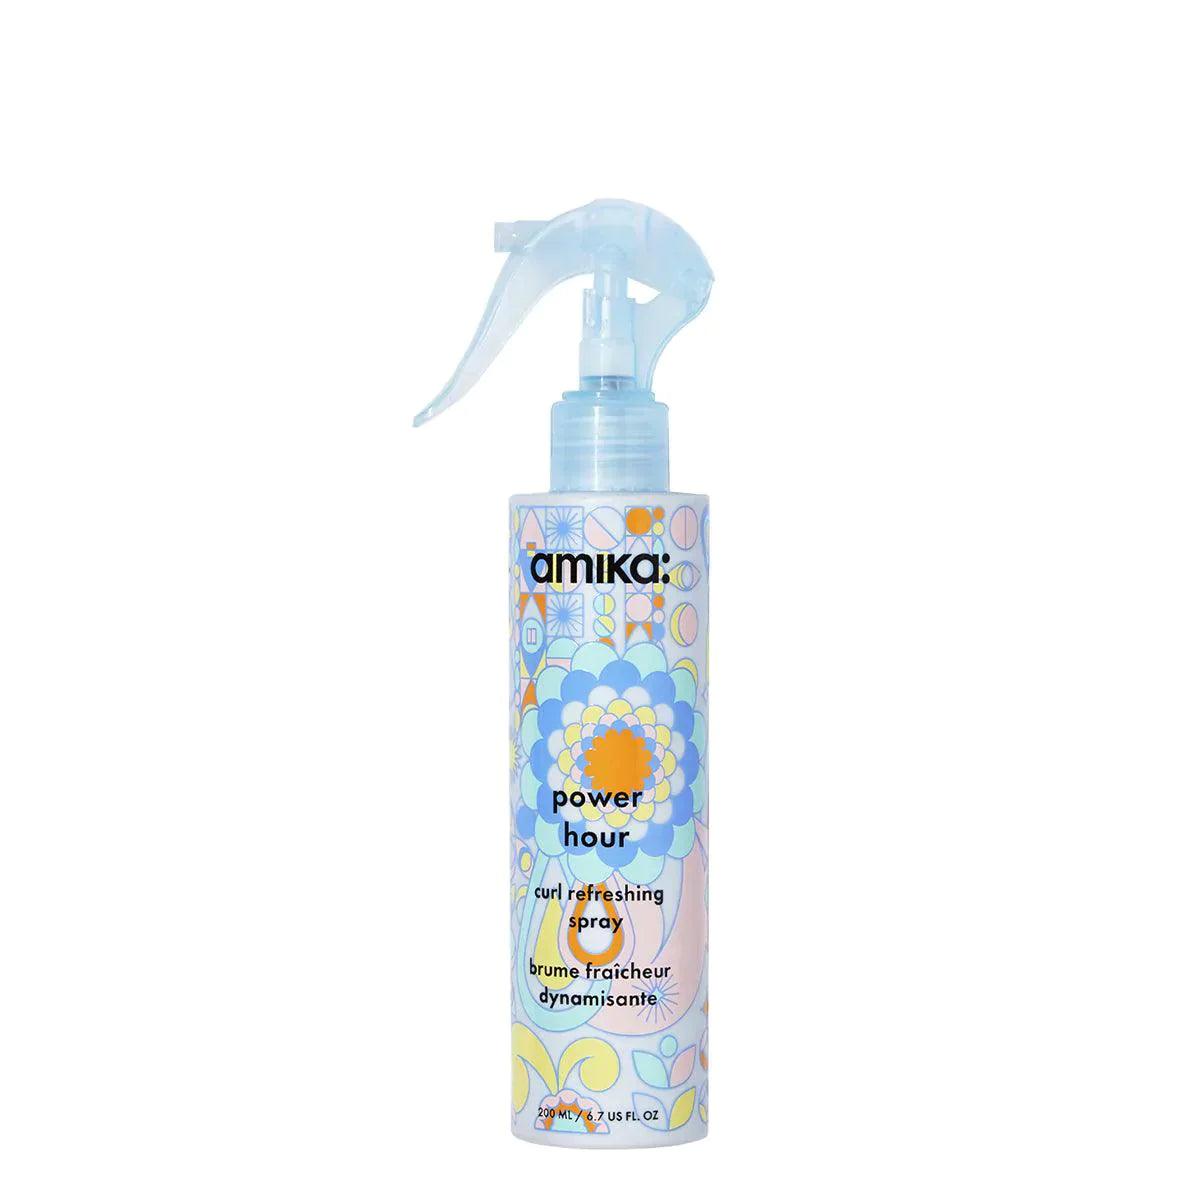 Amika Power Hour Curl Refreshing Spray | Leave-in | Amika | JK SHOP | JK Barber og herre frisør | Lavepriser | Best